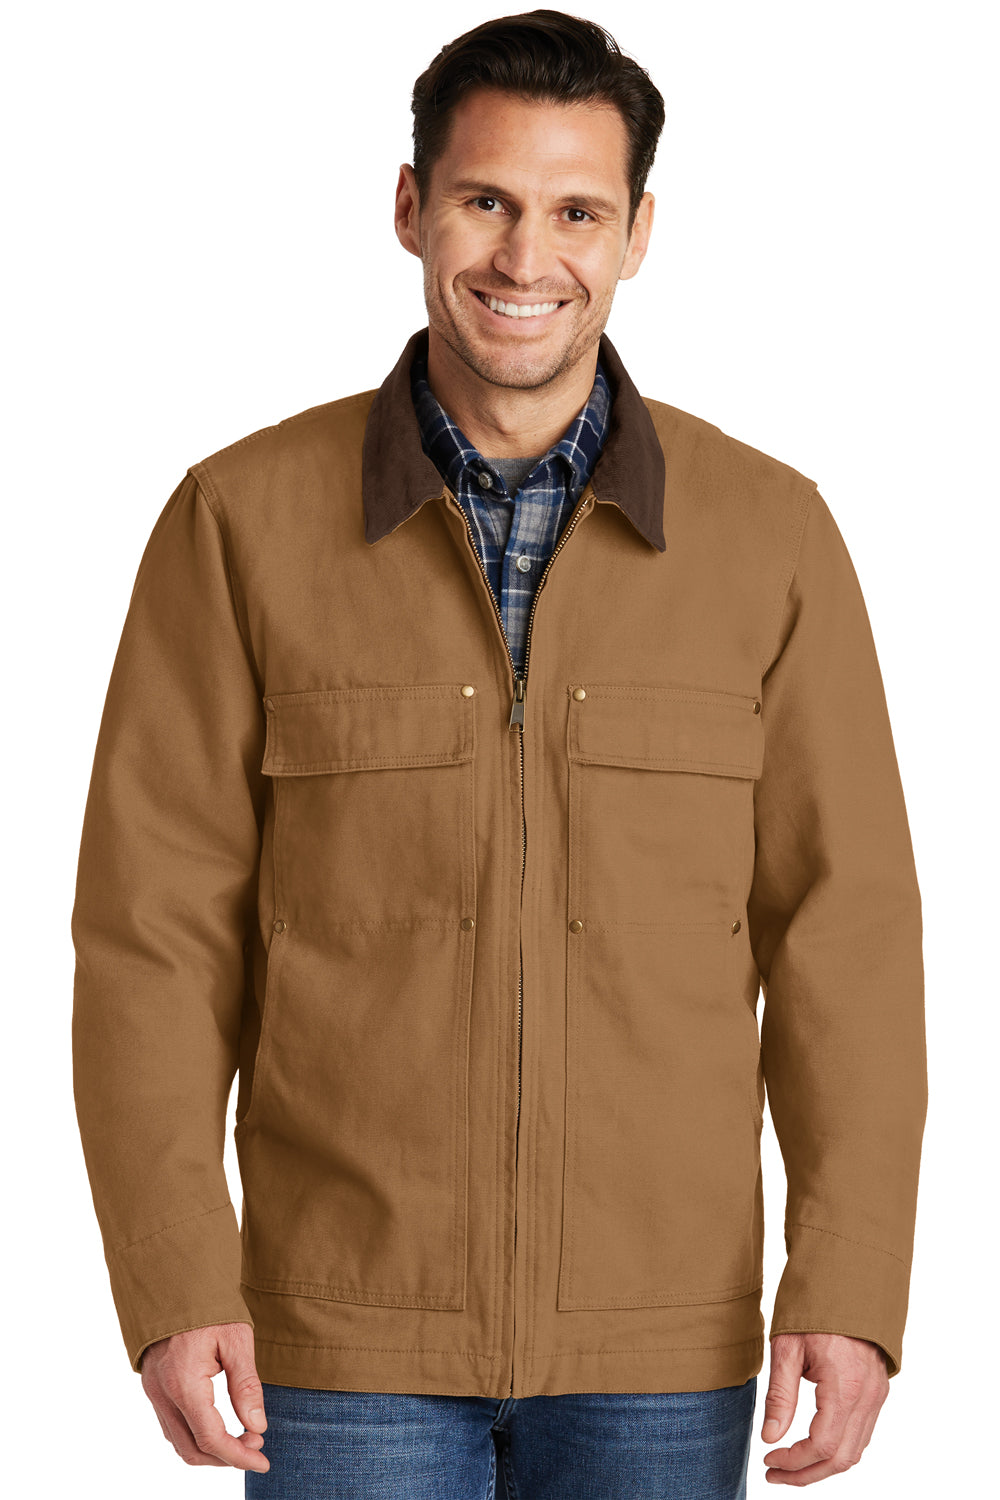 CornerStone CSJ50 Mens Duck Cloth Full Zip Jacket Duck Brown Front